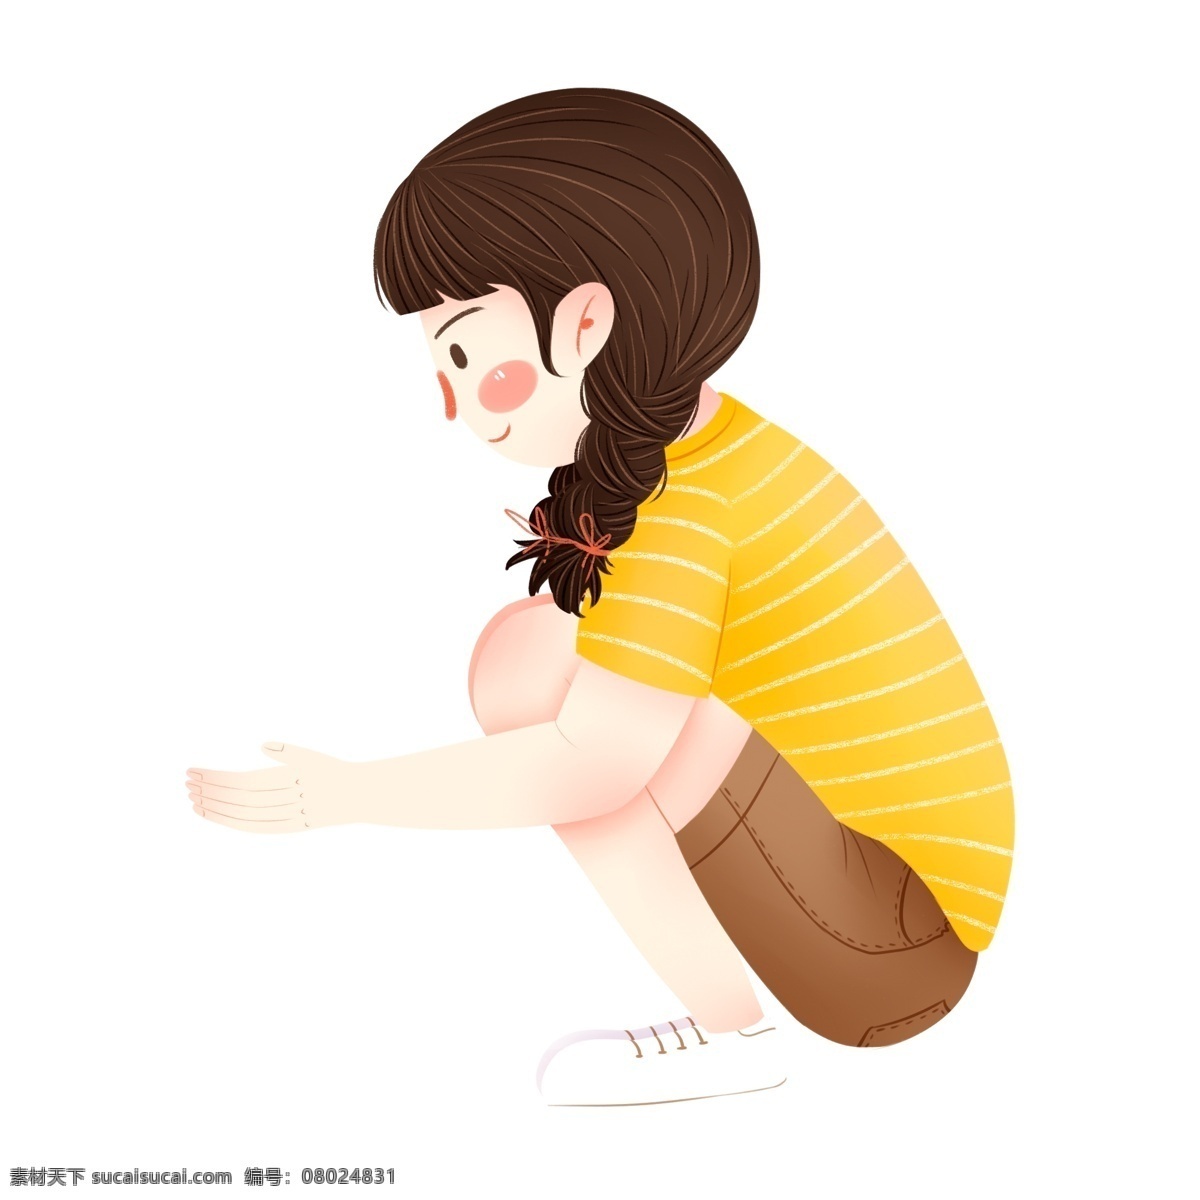 卡通 黄 衣 少女 人物 元素 黄衣少女 手绘 插画 女孩 女生 可爱 人物设计